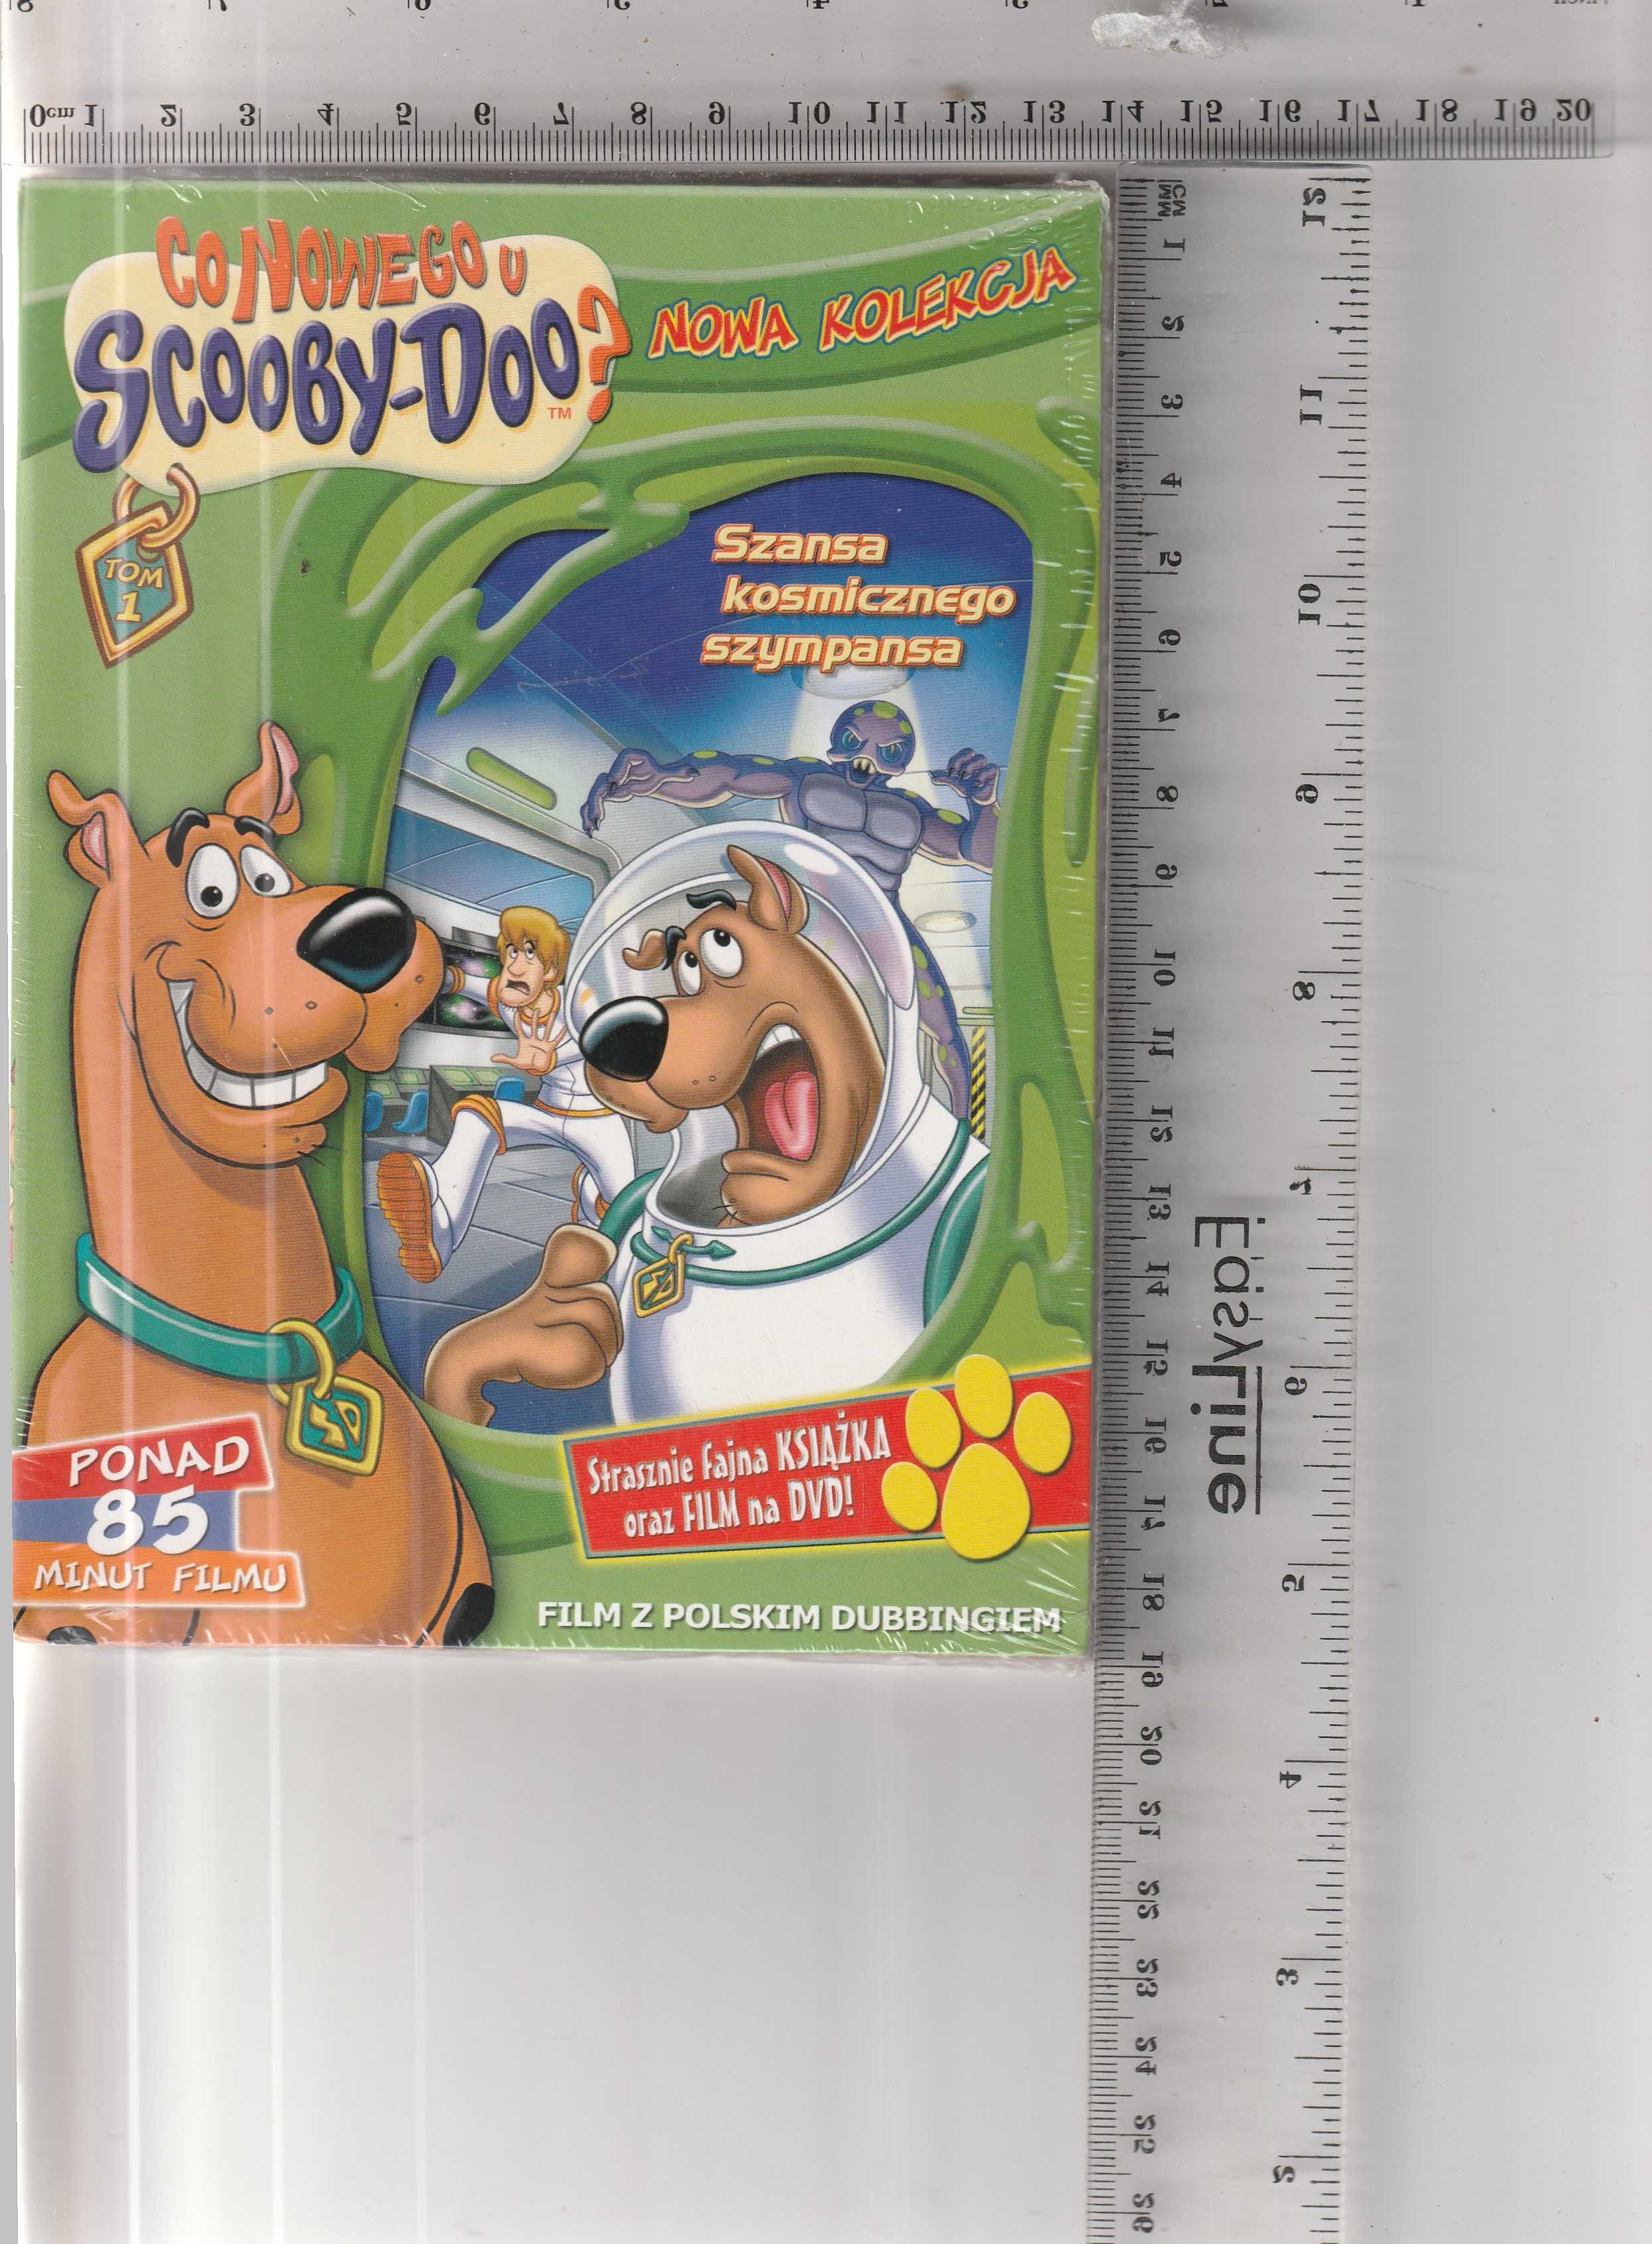 Co nowego u Scooby-Doo?Szansa kosmicznego szympansa DVD